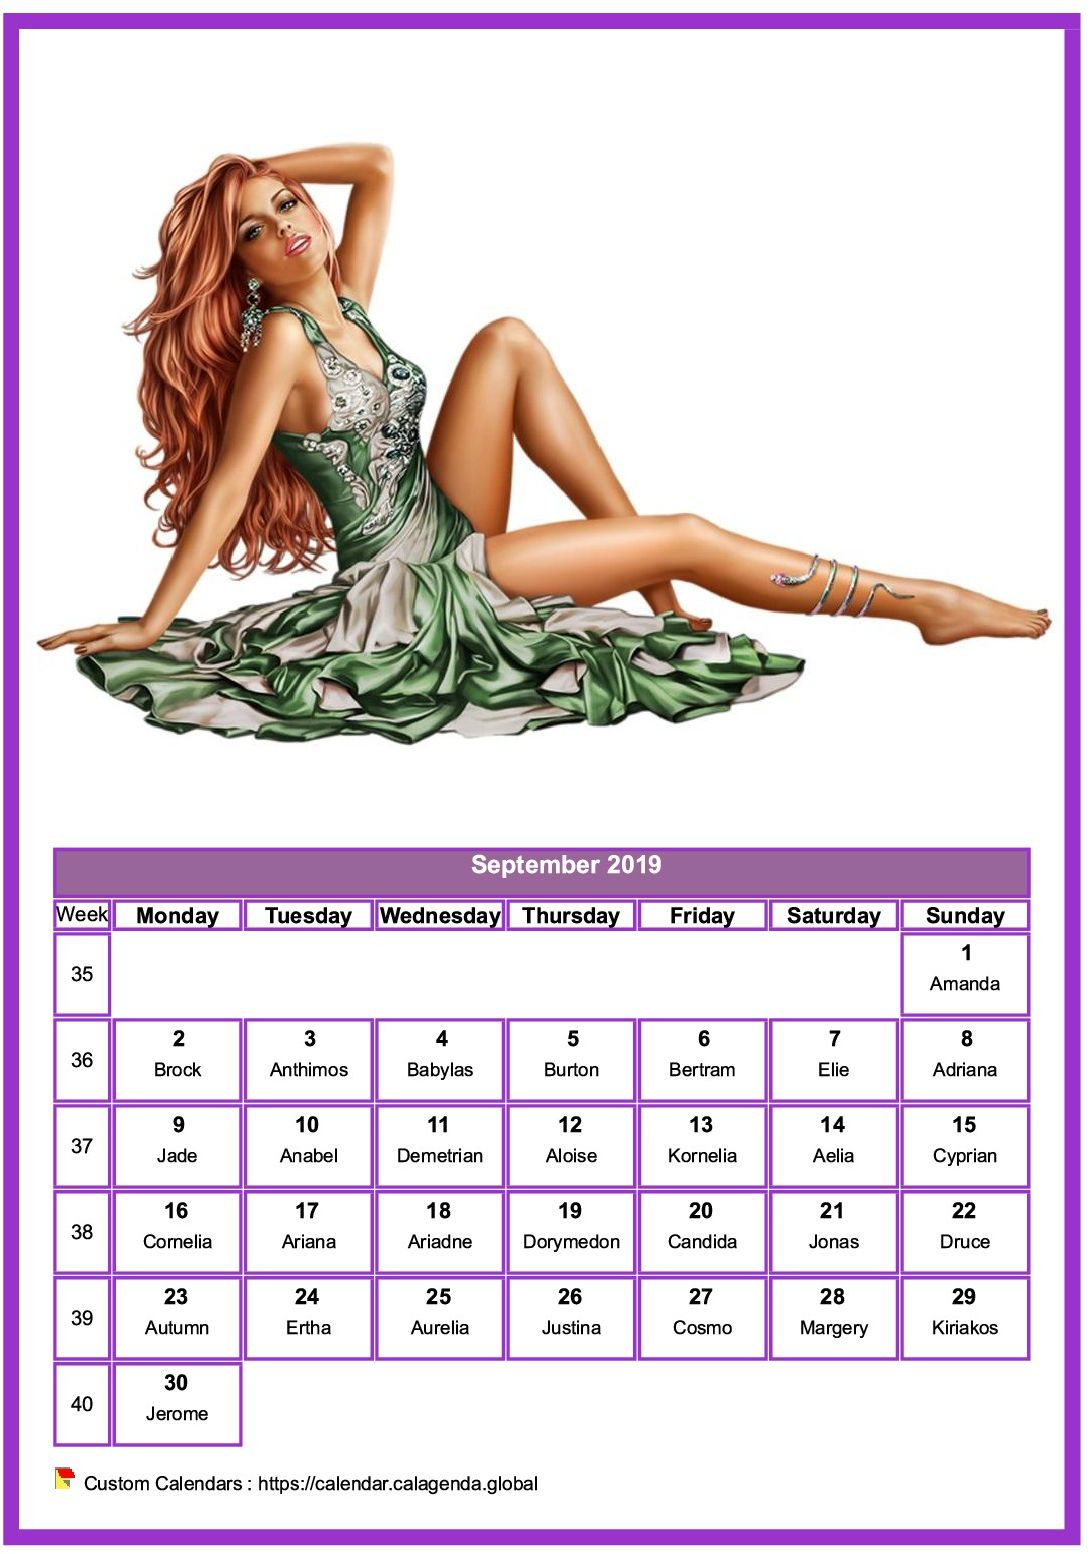 Calendar September 2019 women